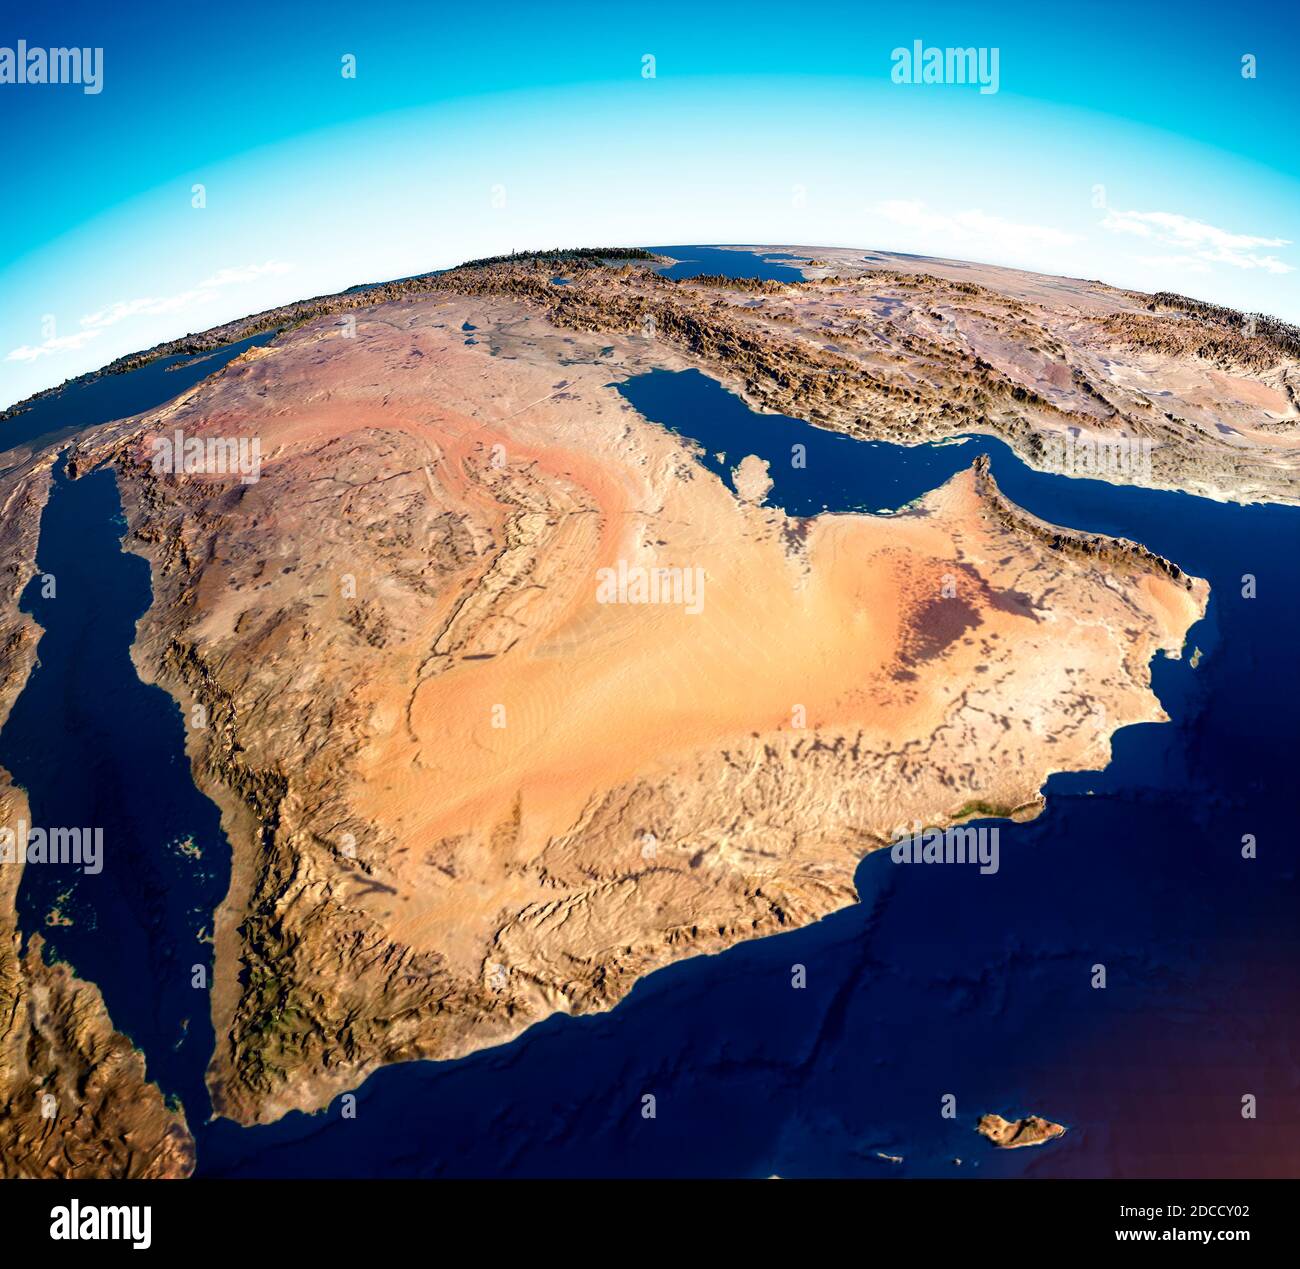 Carte de la péninsule arabique, Moyen-Orient, carte avec relief et montagnes. Arabie saoudite, Yémen, Oman, Émirats arabes Unis, Iran Banque D'Images